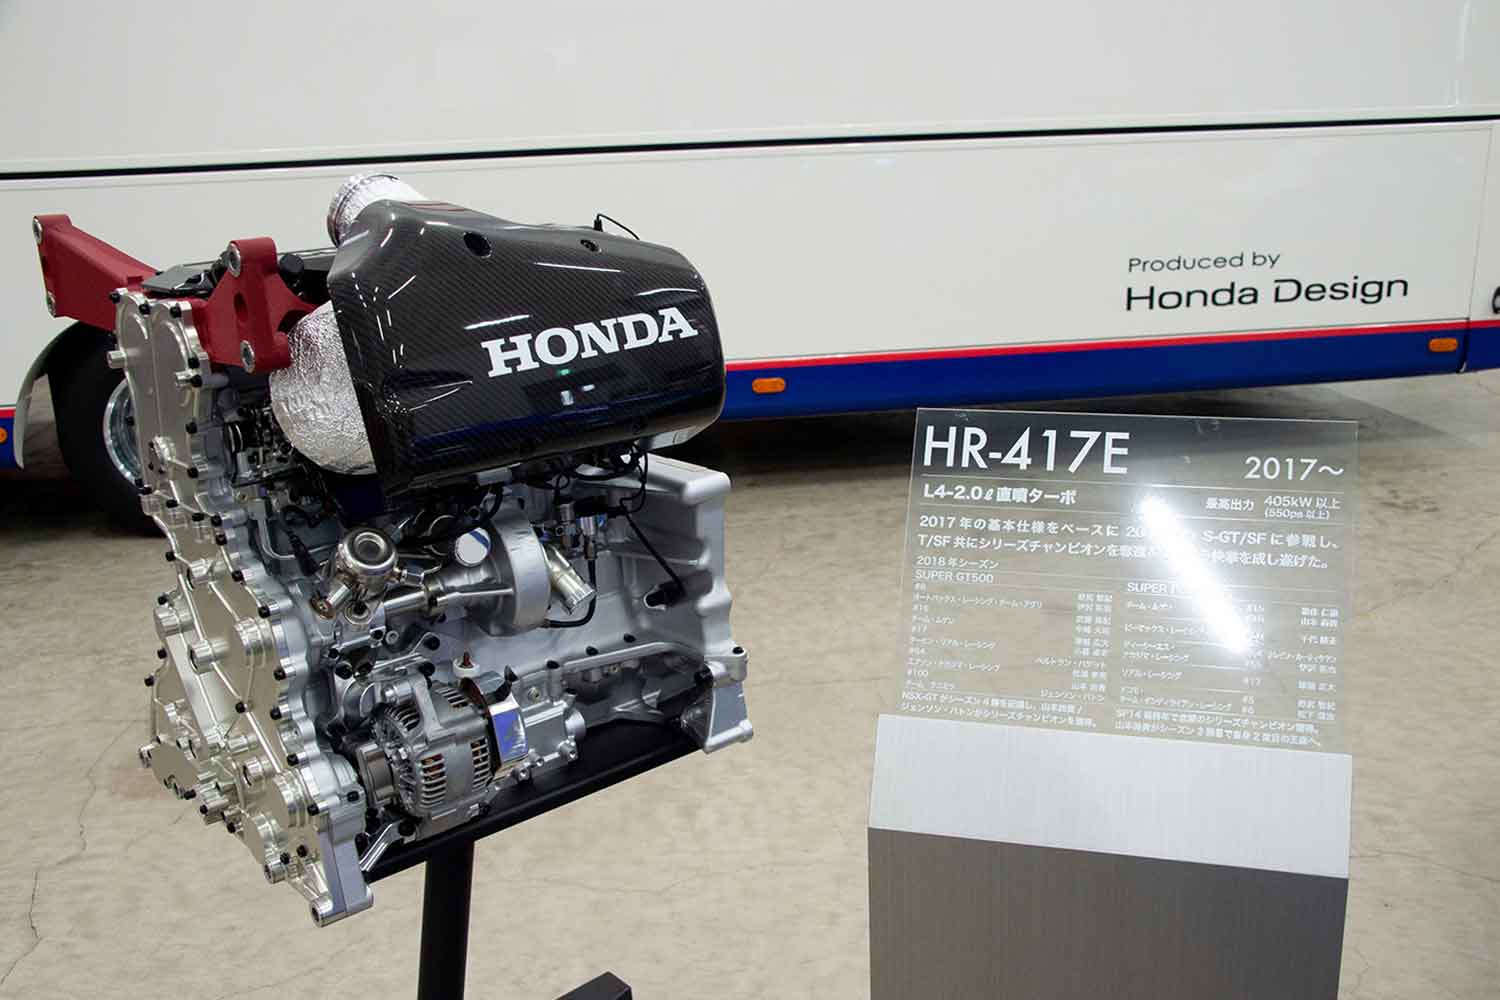 スーパーフォーミュラ用のホンダエンジン「HR-417E」